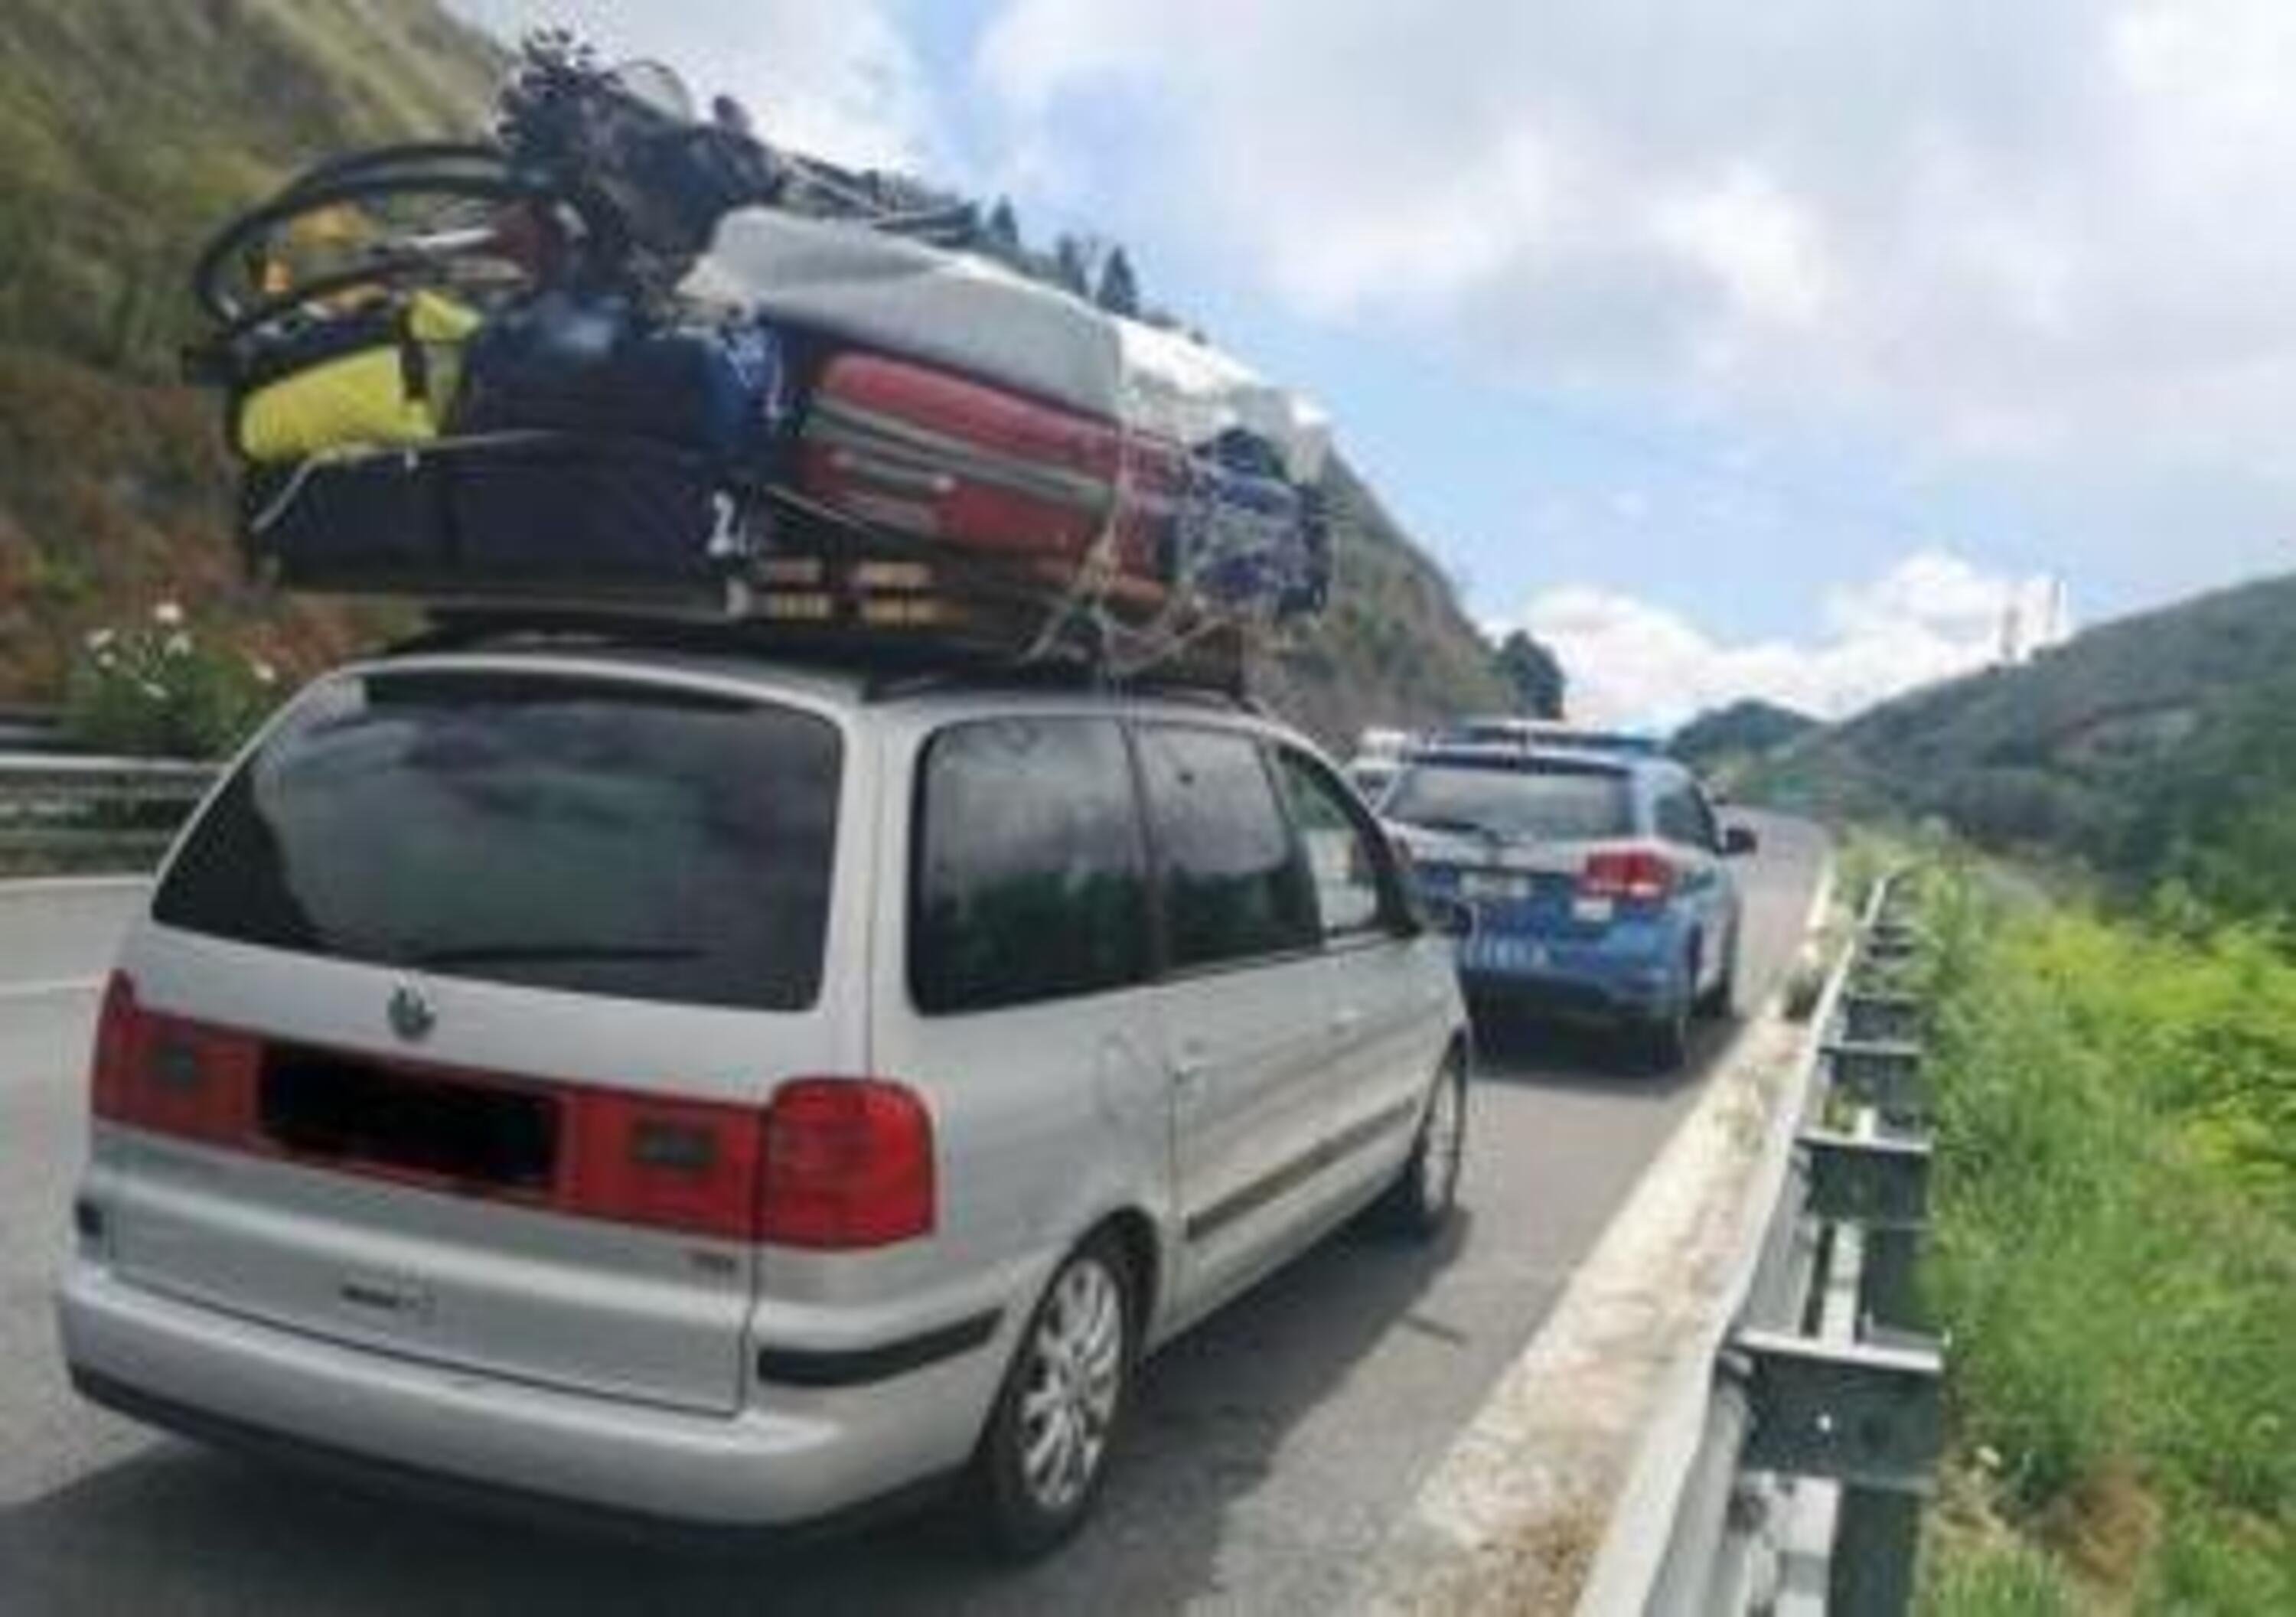 In vacanza con tutto in auto: monovolume VW con tetto &ldquo;stracarico&rdquo; fermato in autostrada